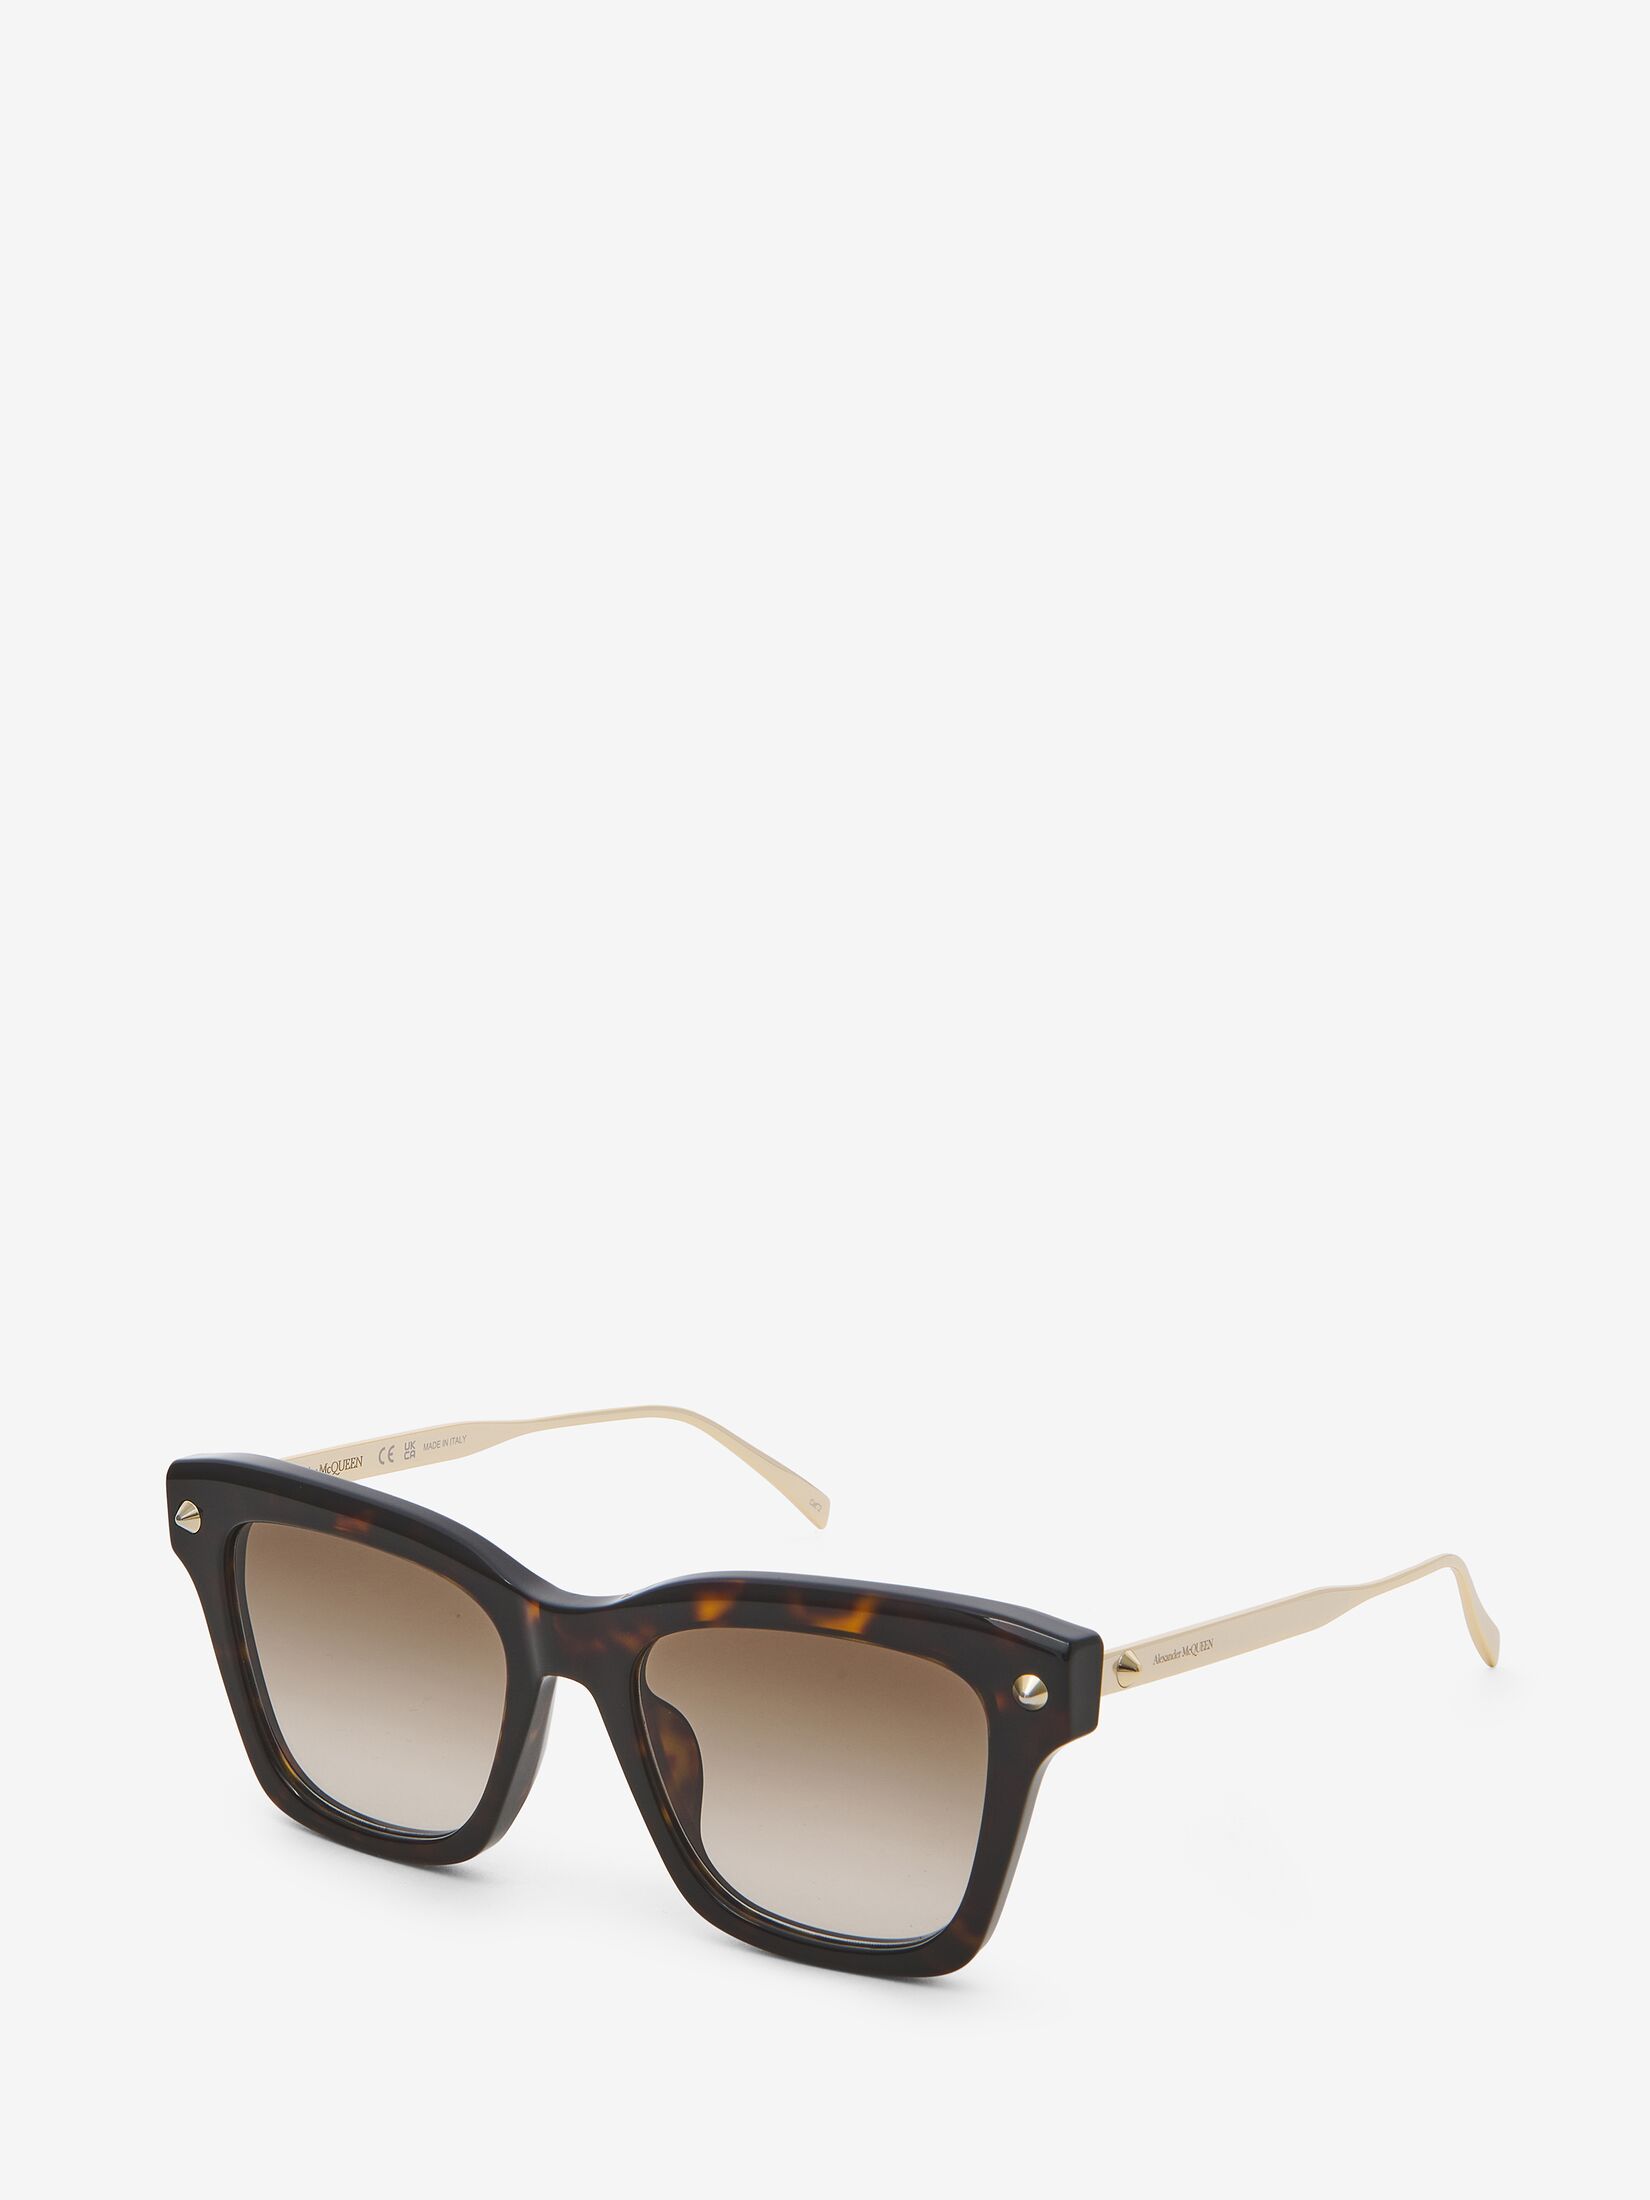 Spike Studs Soft Square Sunglasses